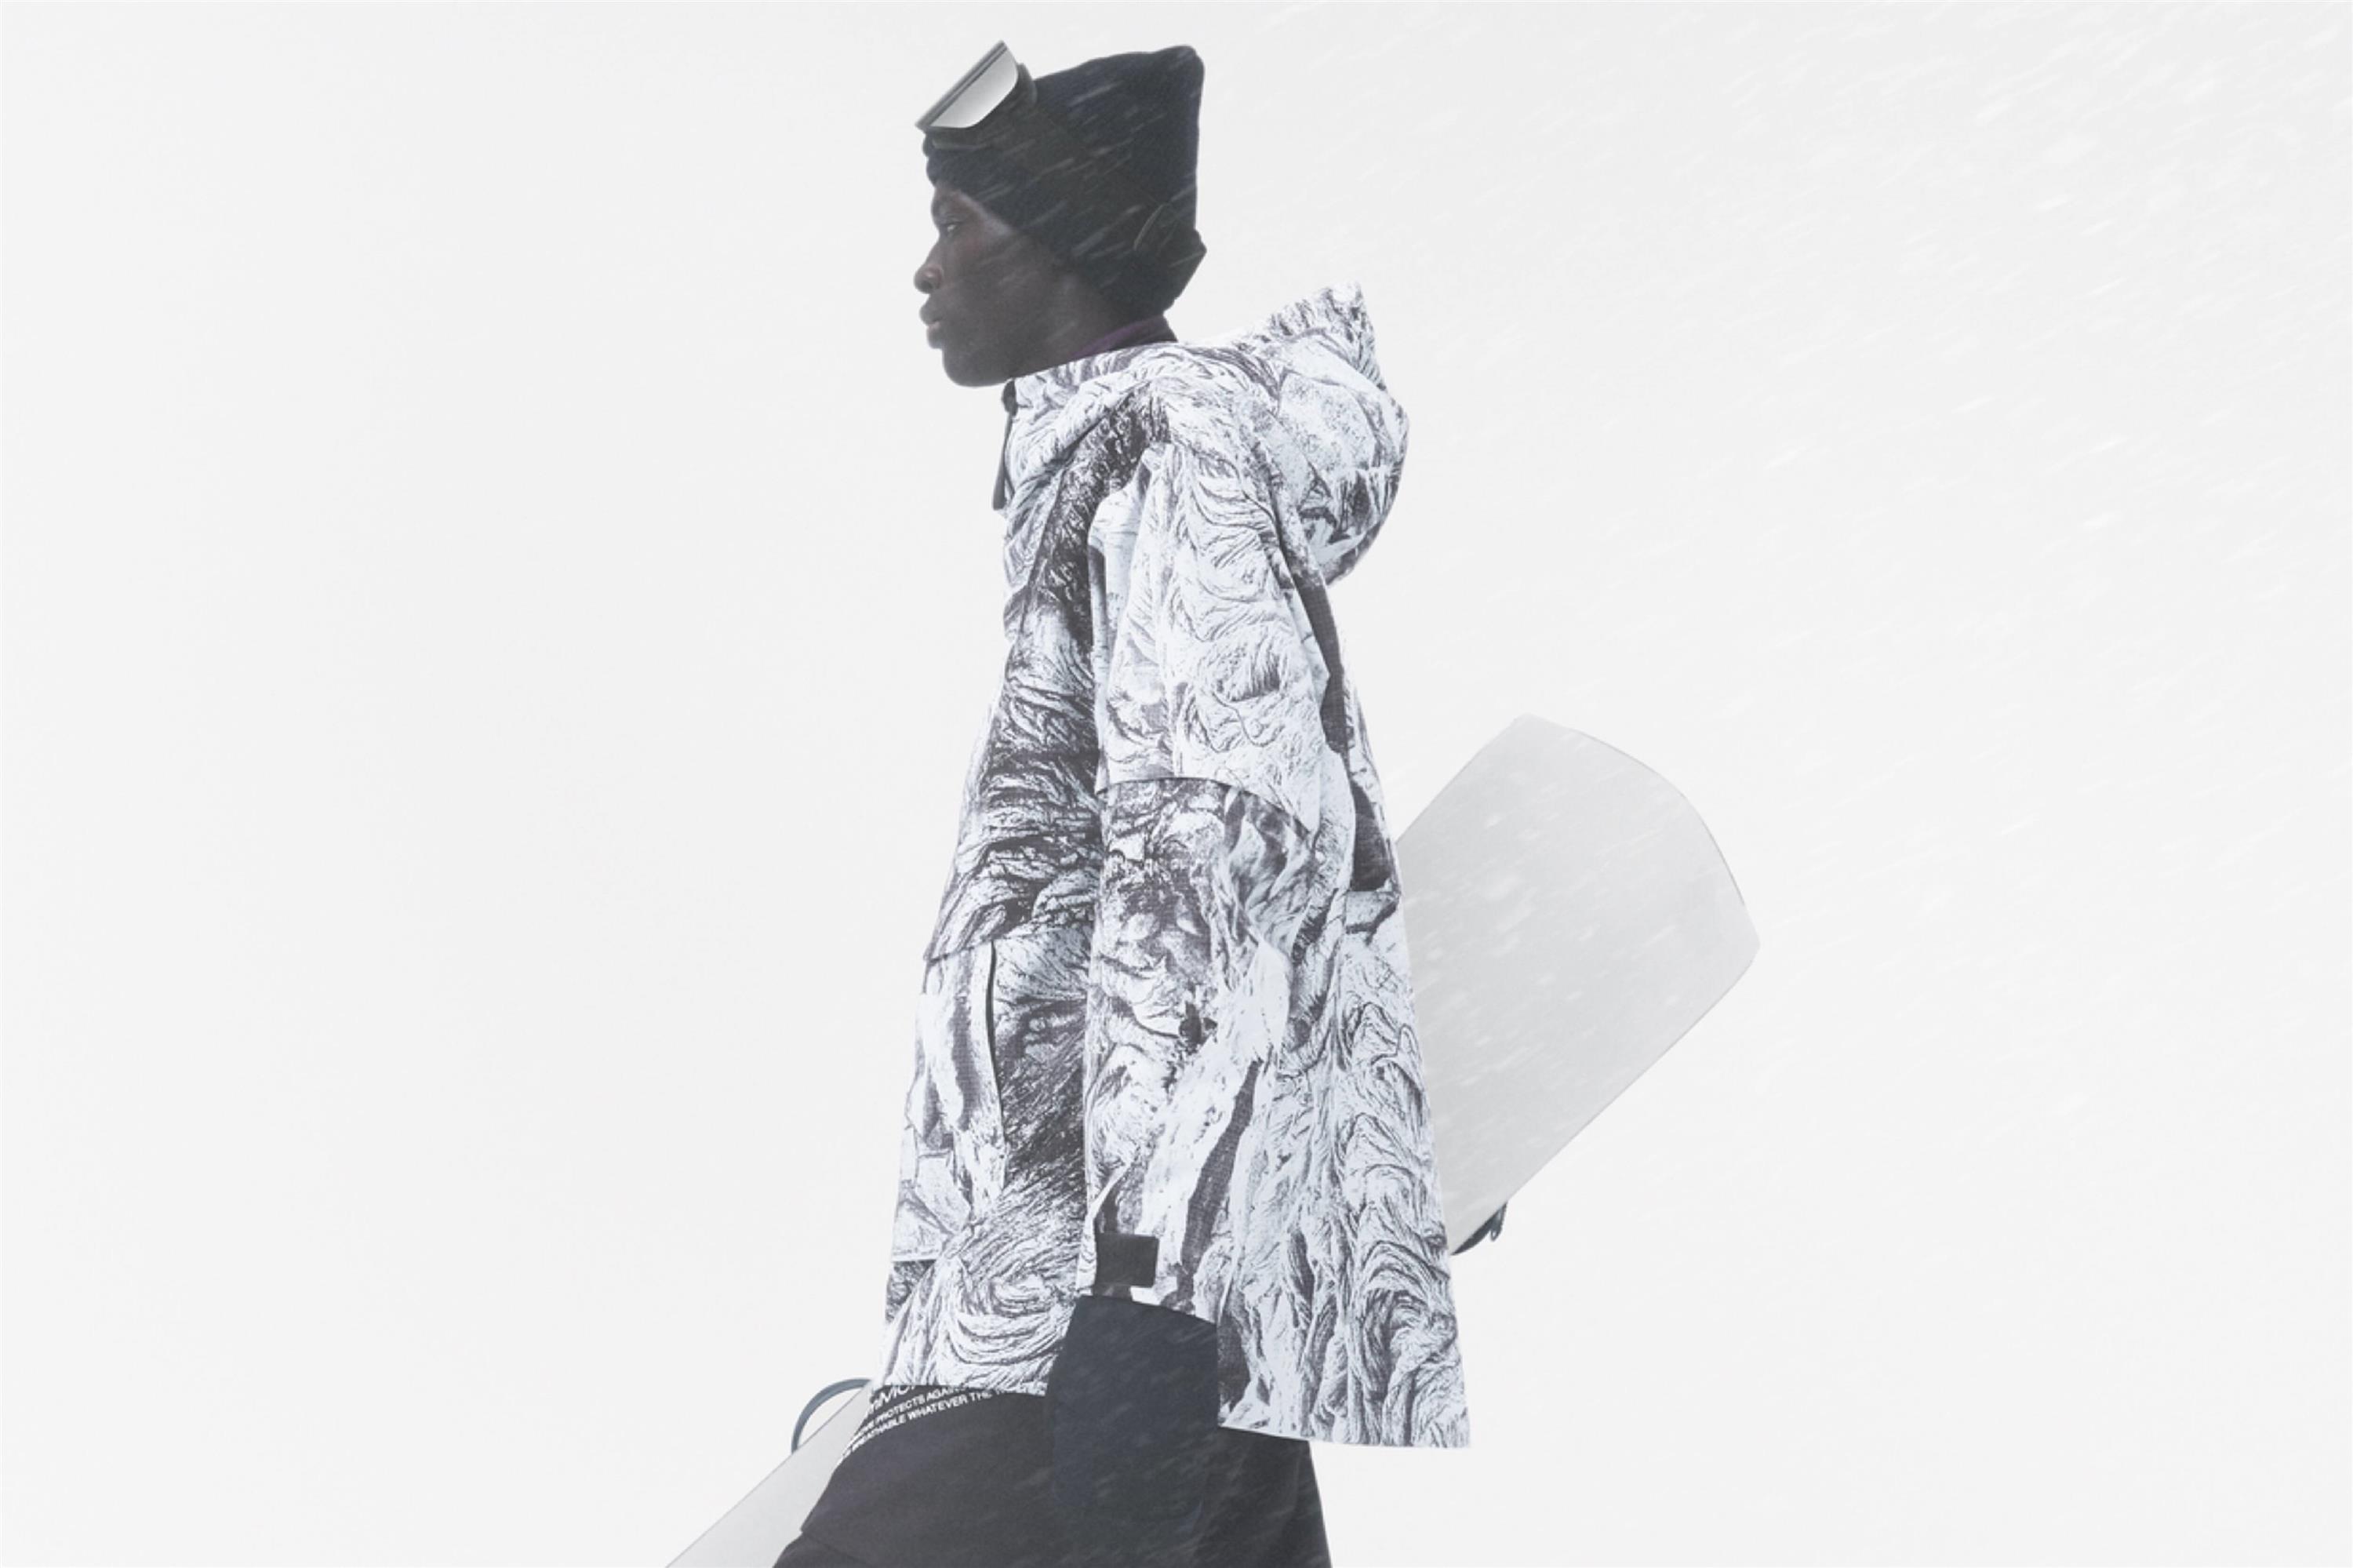 H&M Move: Snow Drop Мужская Коллекция Горнолыжной Одежды и